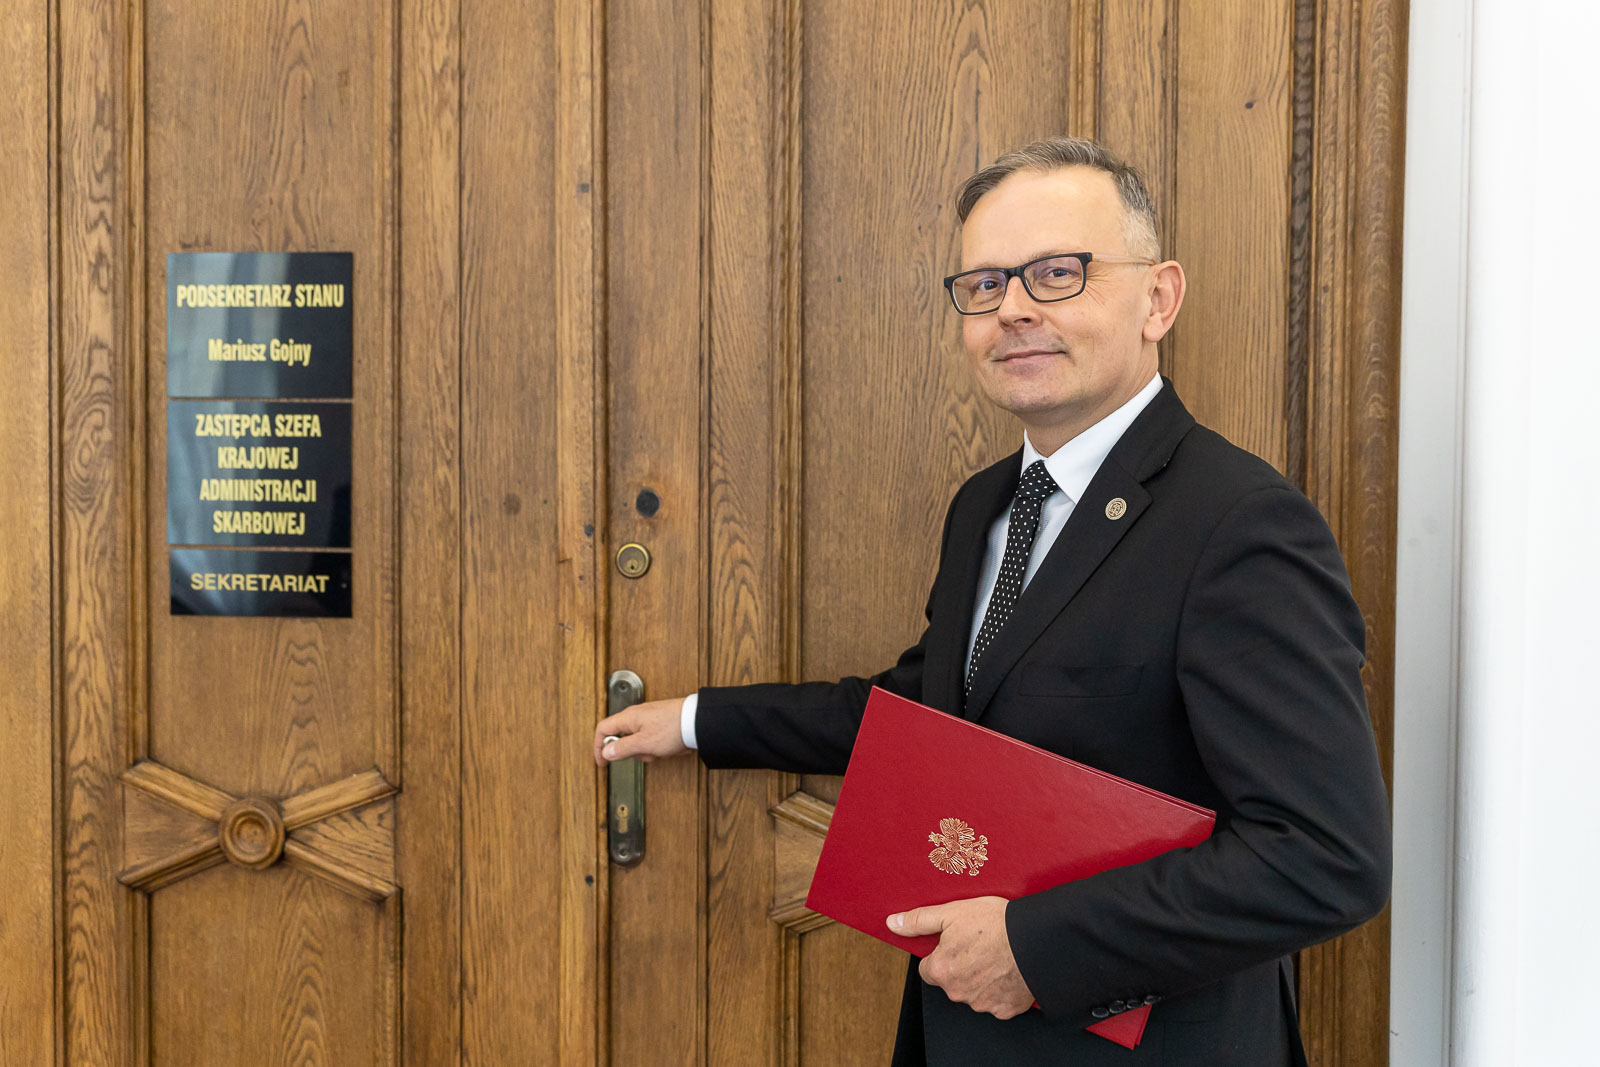 Mariusz Gojny - dotychczasowy dyrektor IAS w Katowicach - awansowany na wiceszefa KAS